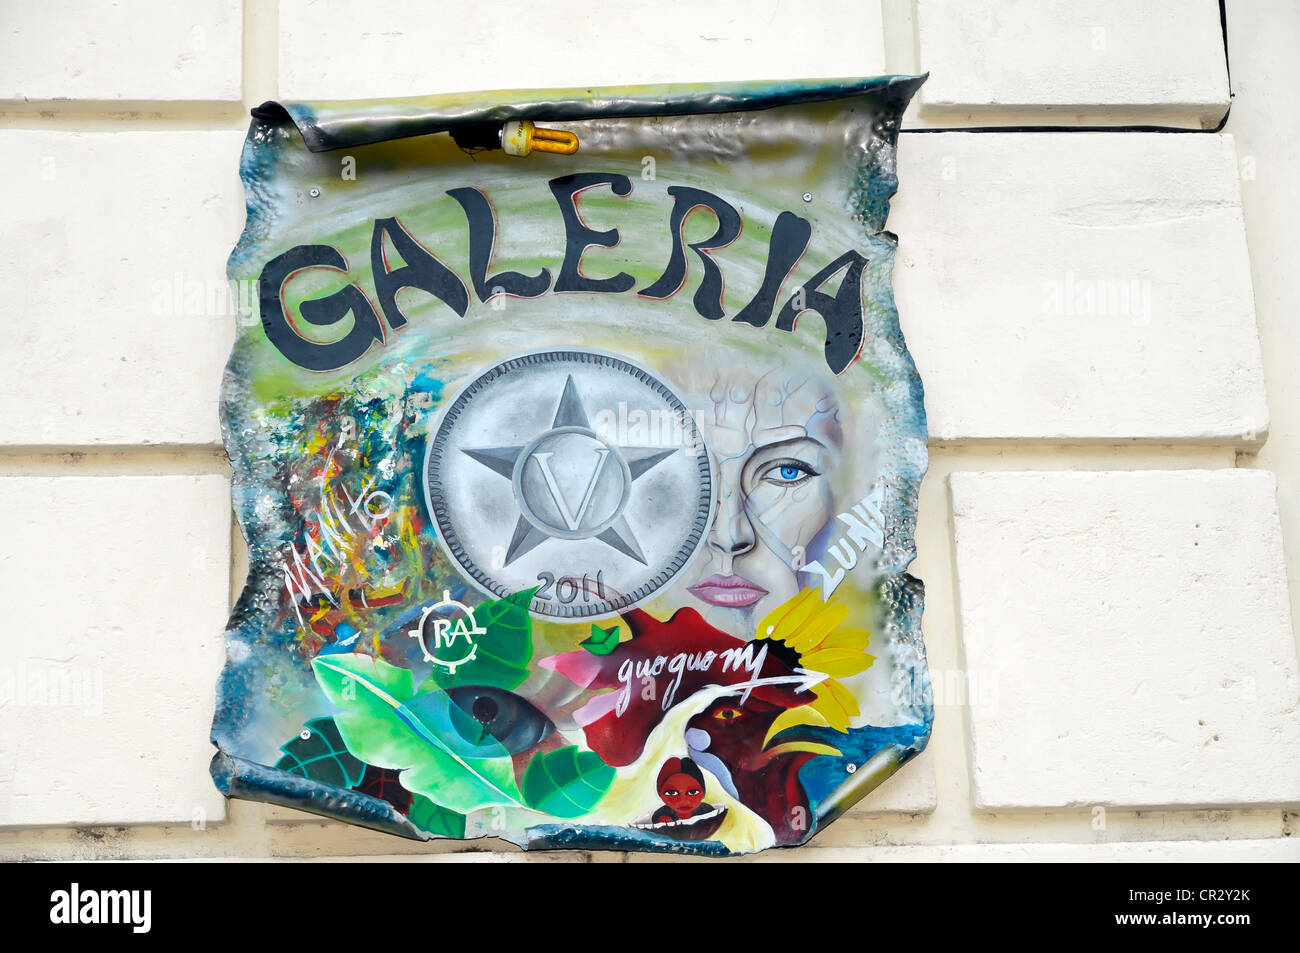 Galeria, enseigne publicitaire d'une galerie, centre ville de La Havane, Centro Habana, Cuba, Antilles, Caraïbes, Amérique Centrale Banque D'Images